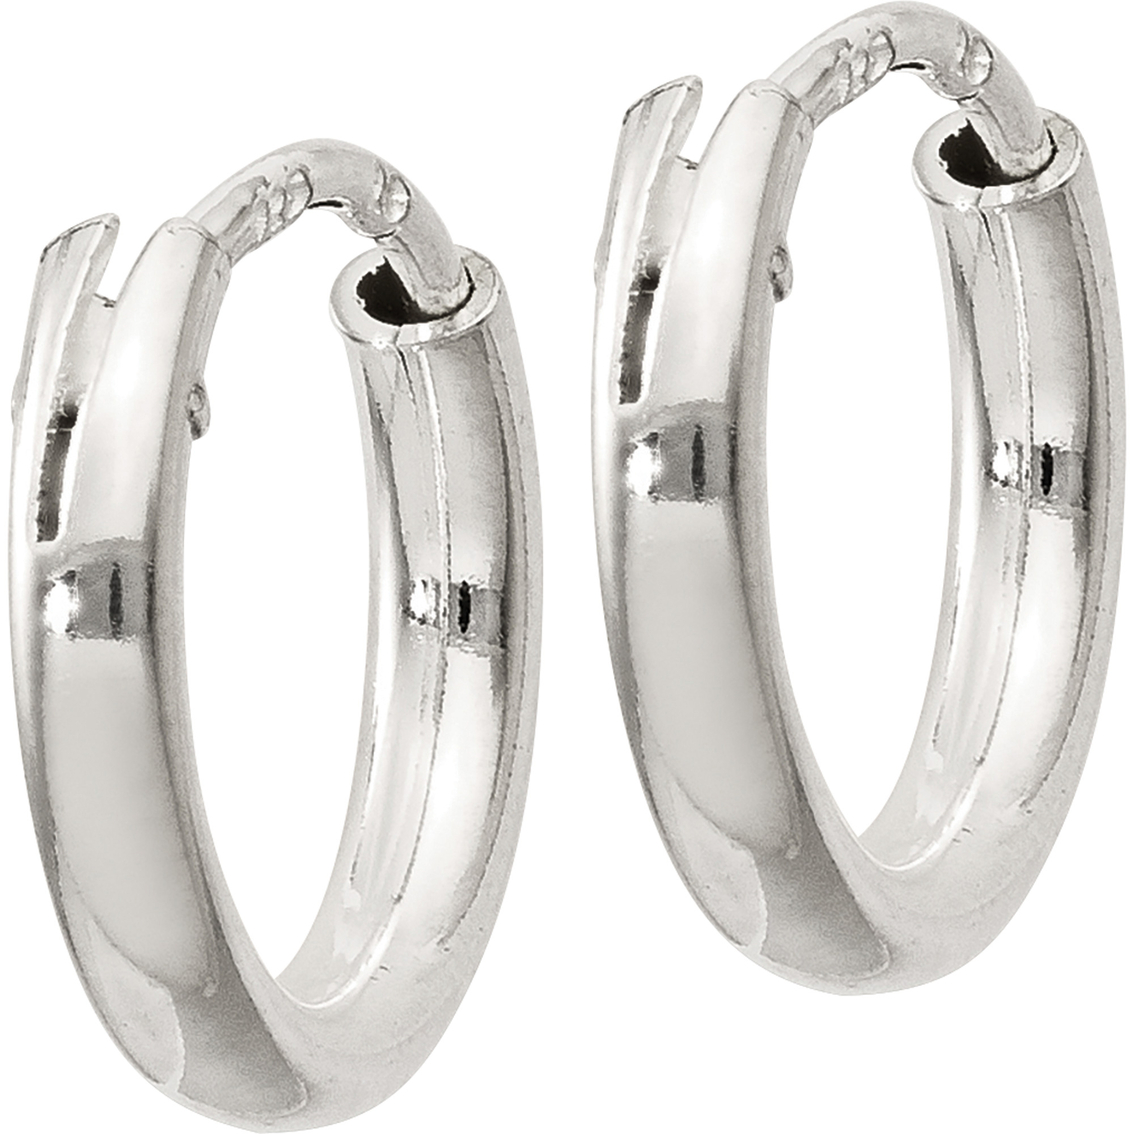 Sterling Silver Endless Hoop Earrings - Image 2 of 2